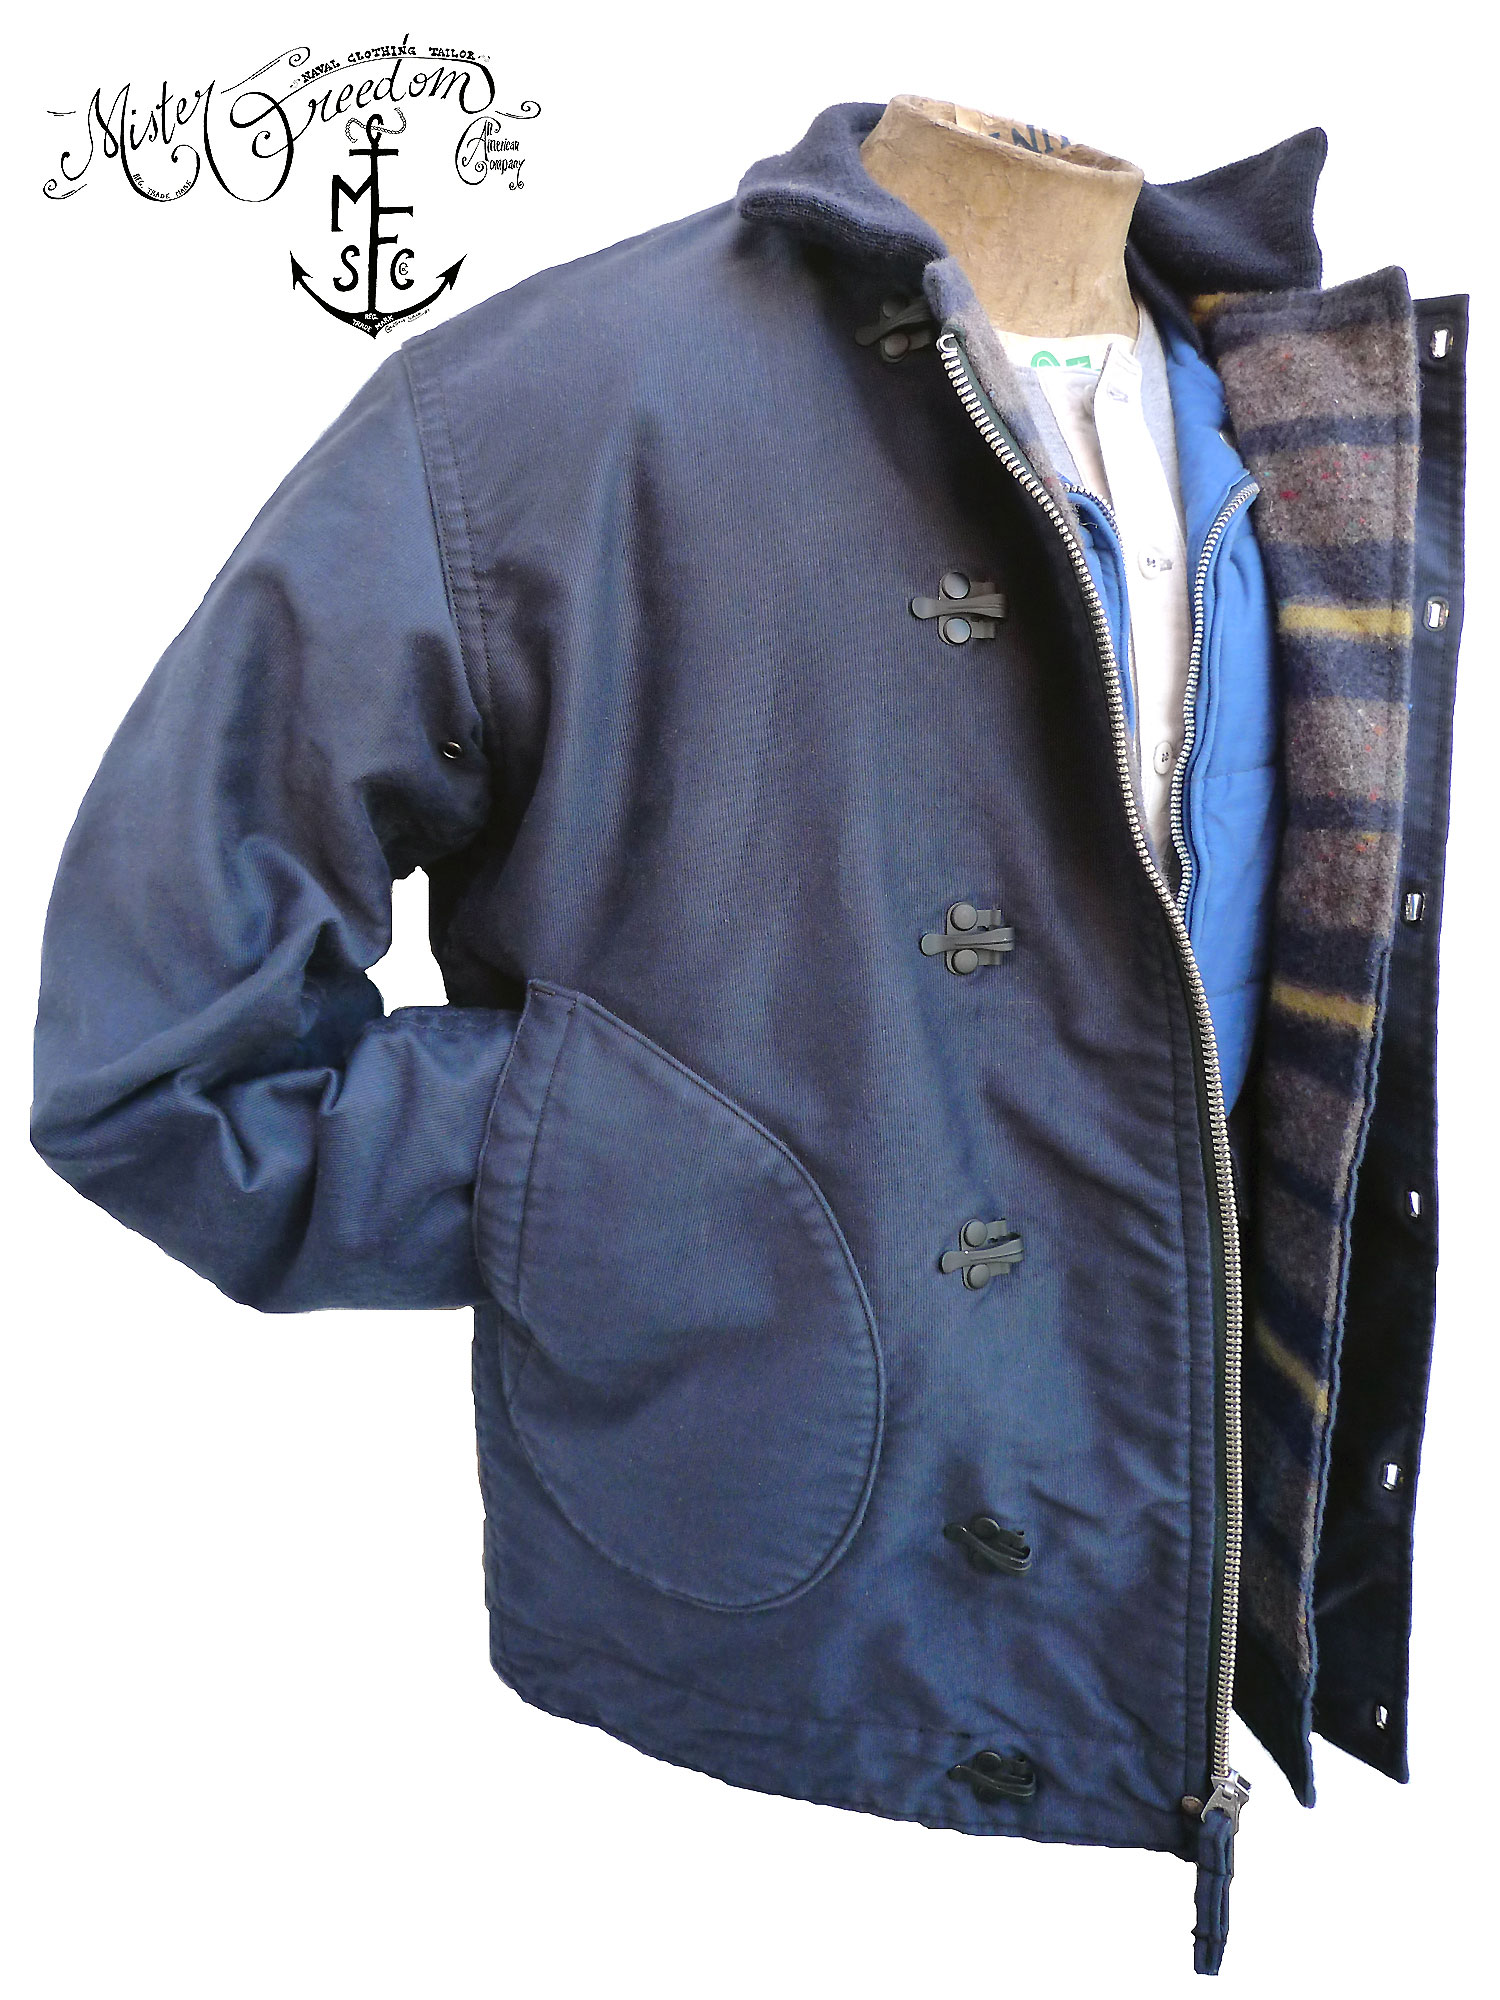 MFSC Deck Jacket Troy issue "N-1Hmd"